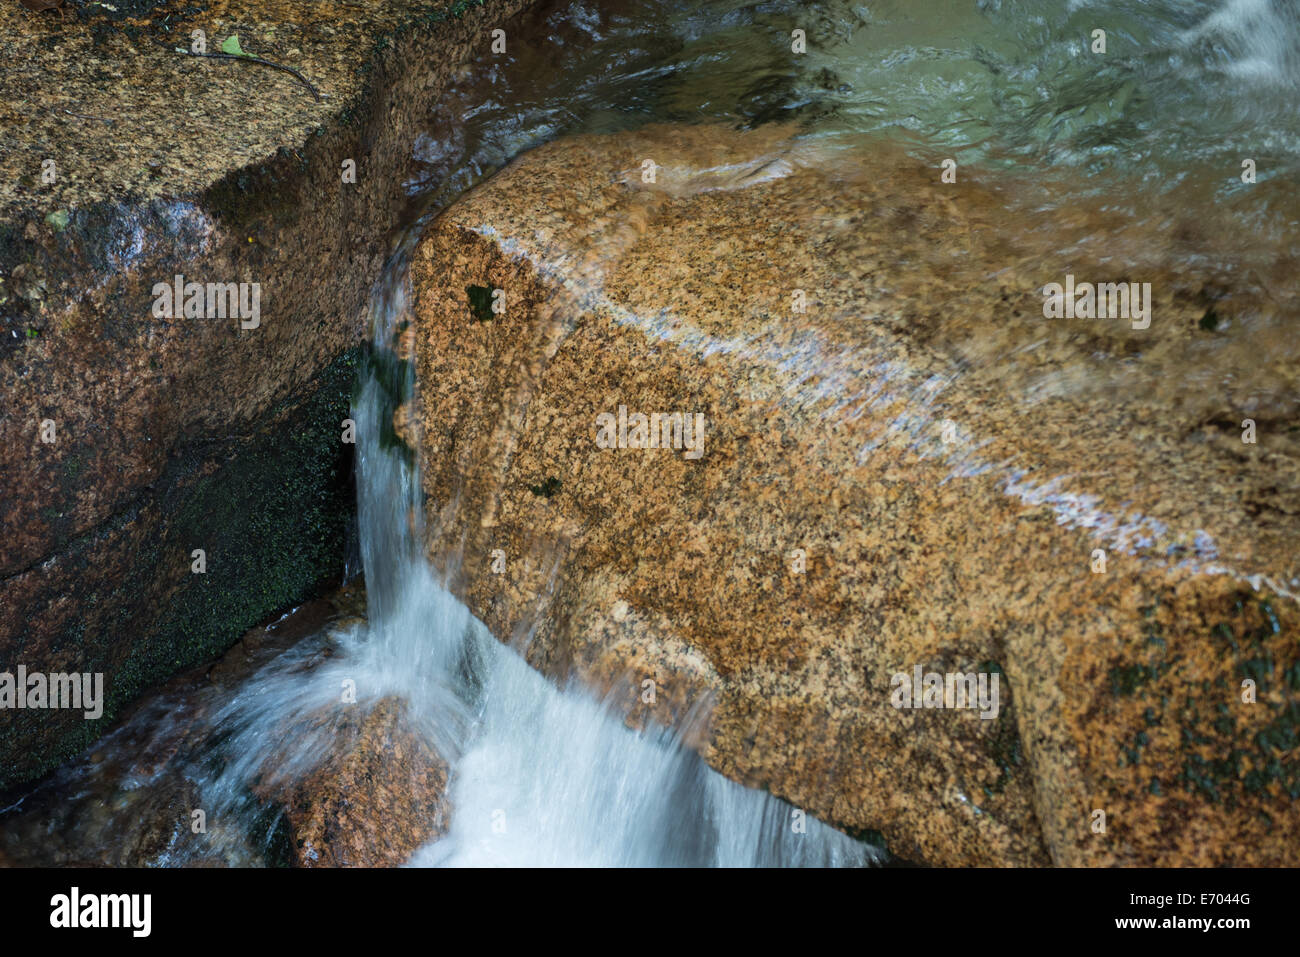 L'acqua precipita attraverso la pietra, la levigatura e la sagomatura del rock, carving un percorso verso il basso Foto Stock